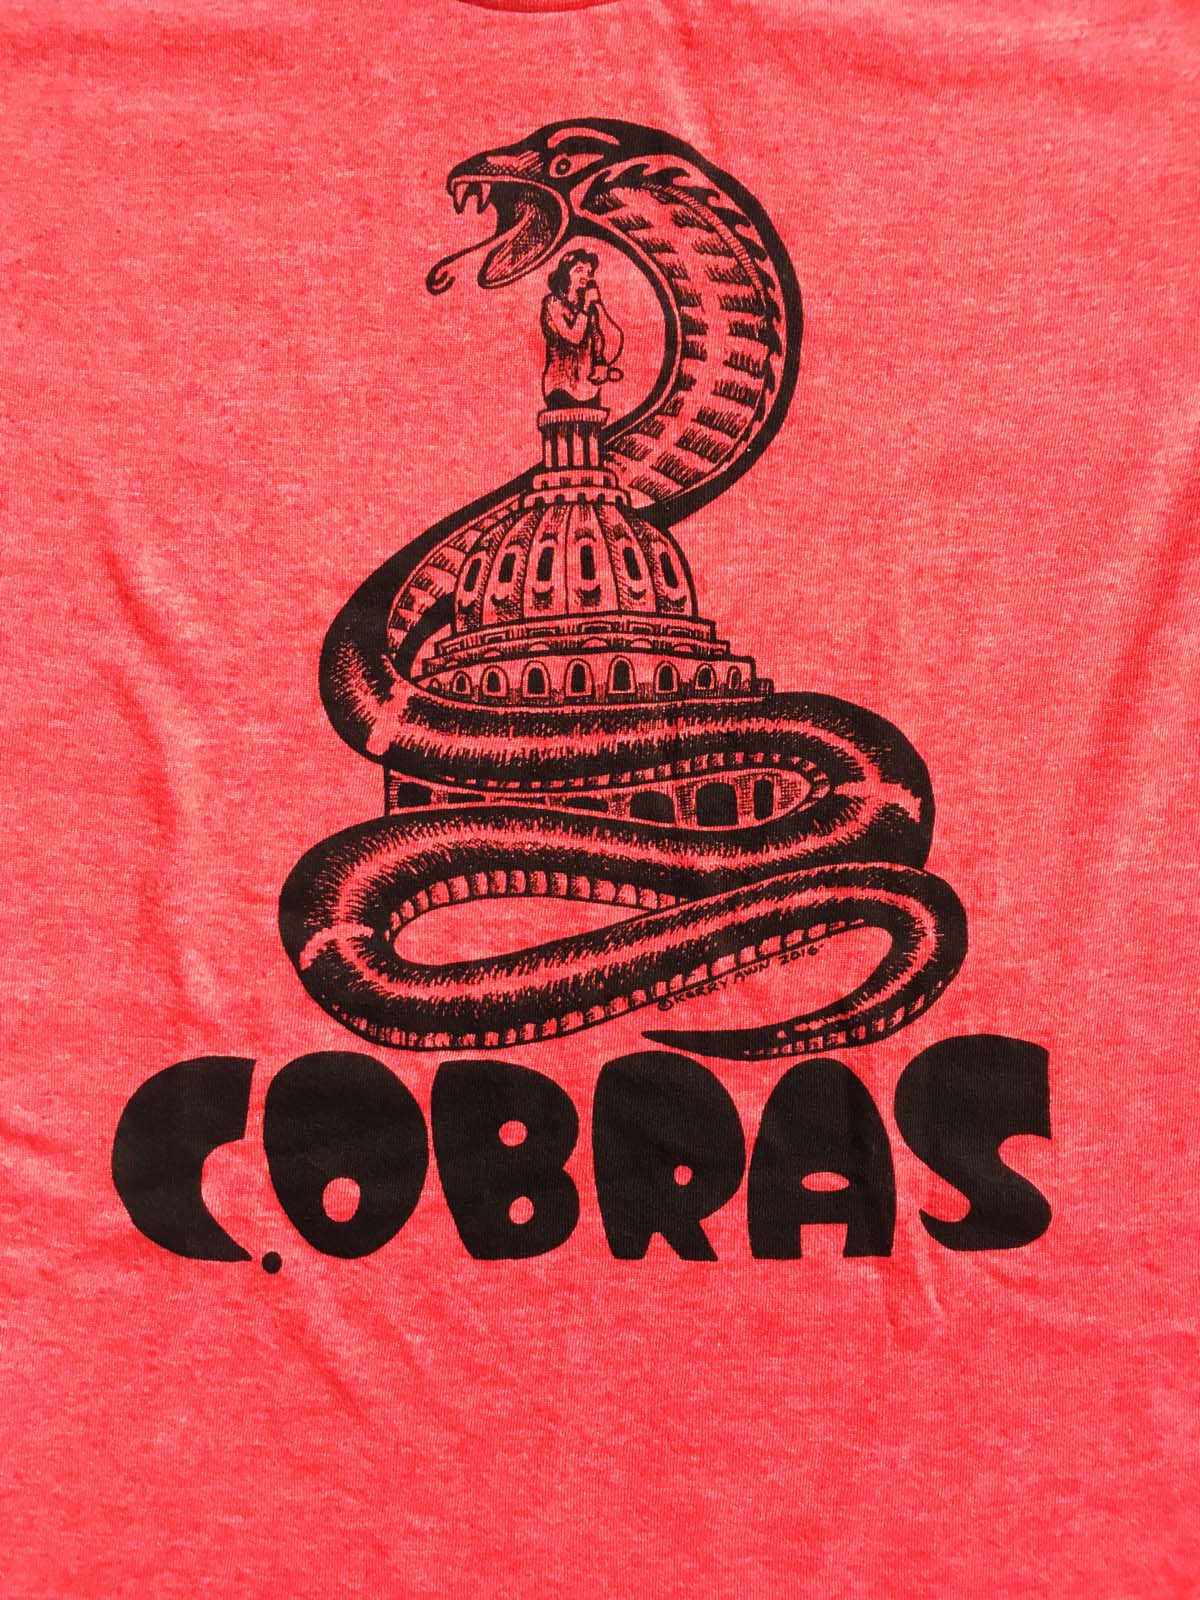 Women's Red Cobras T Shirt